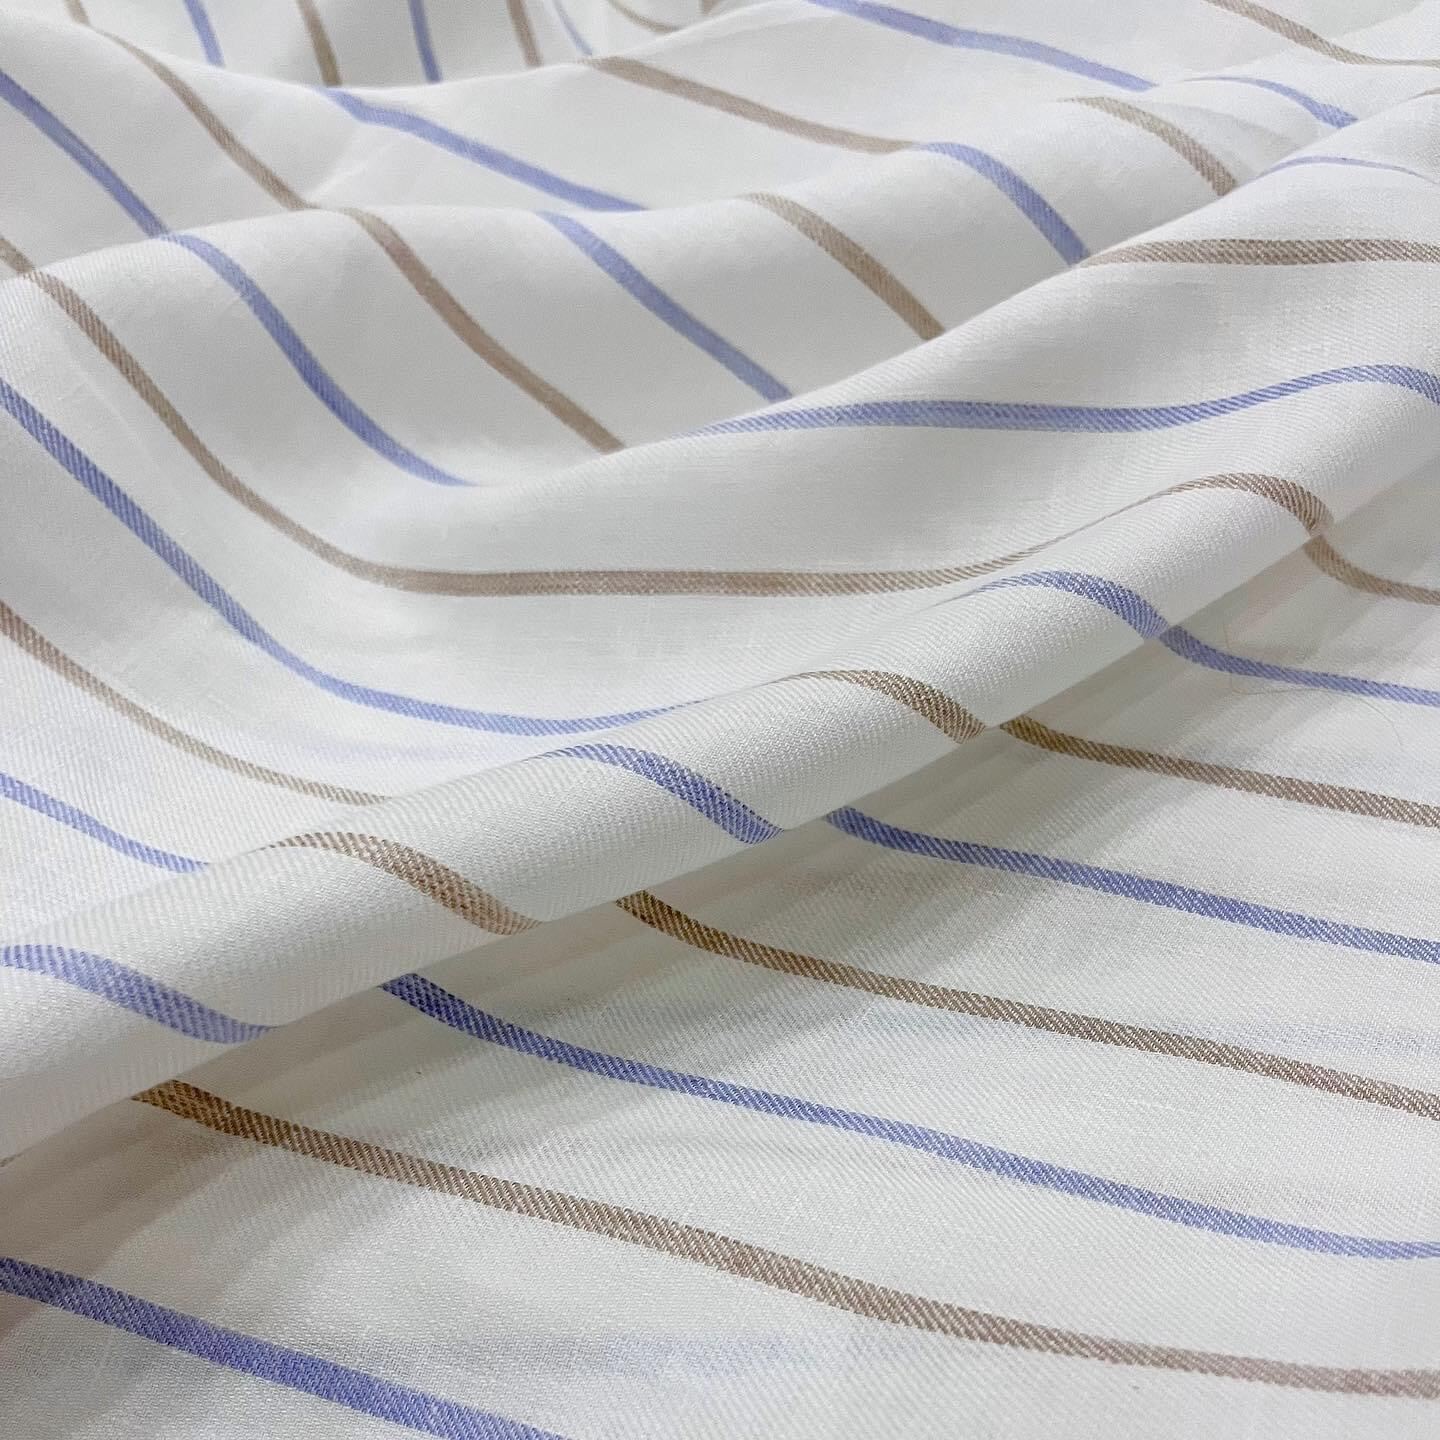 [HCM] Vải Linen Tưng pre thớ chéo - Sọc xanh nâu - Chất vải mềm mướt tay, may đầm lót nhẹ nha khách